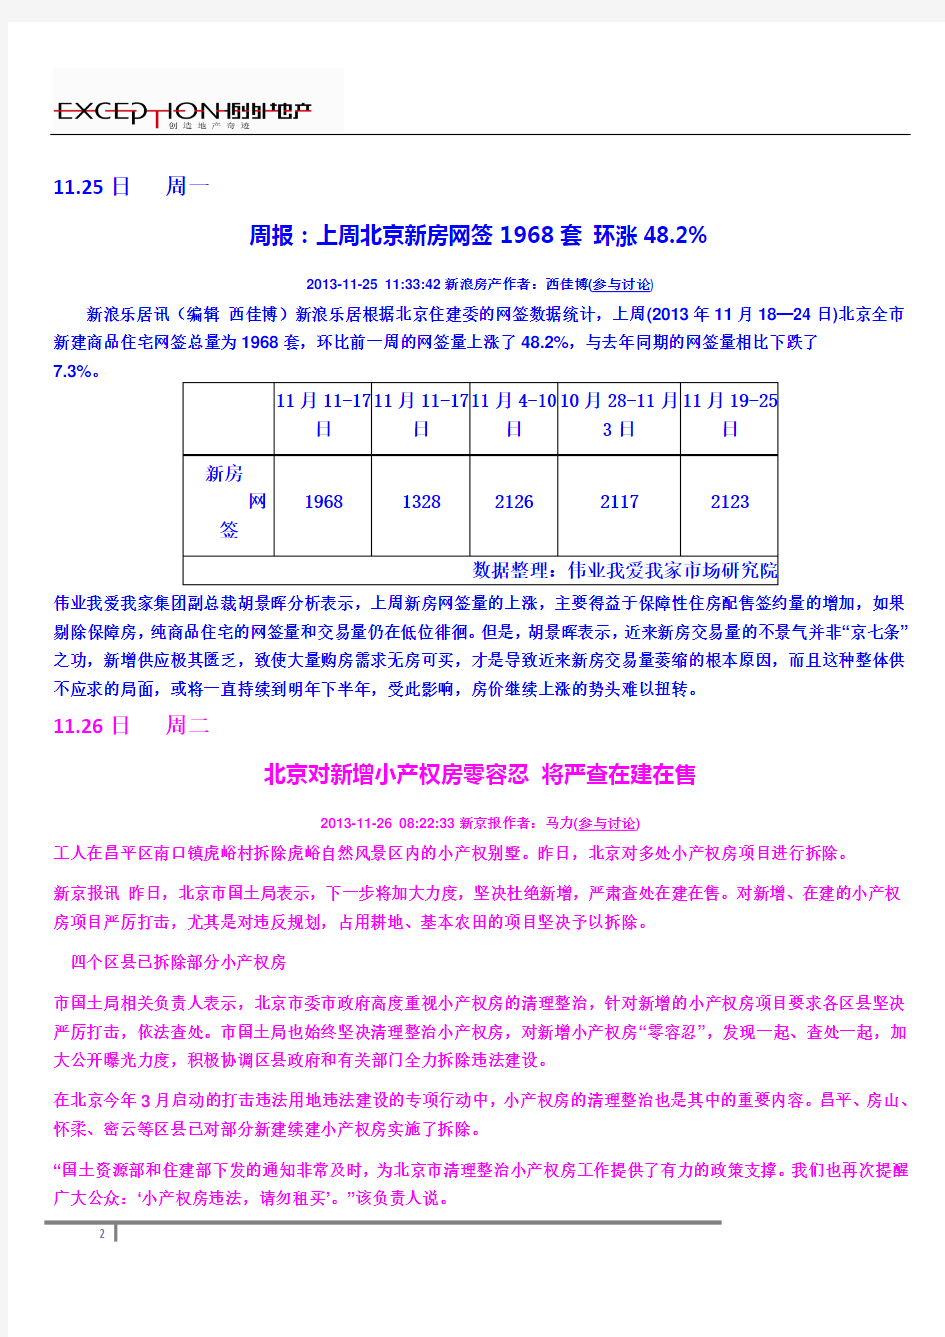 2013.11.25-12.1日周地产要闻(北京)1